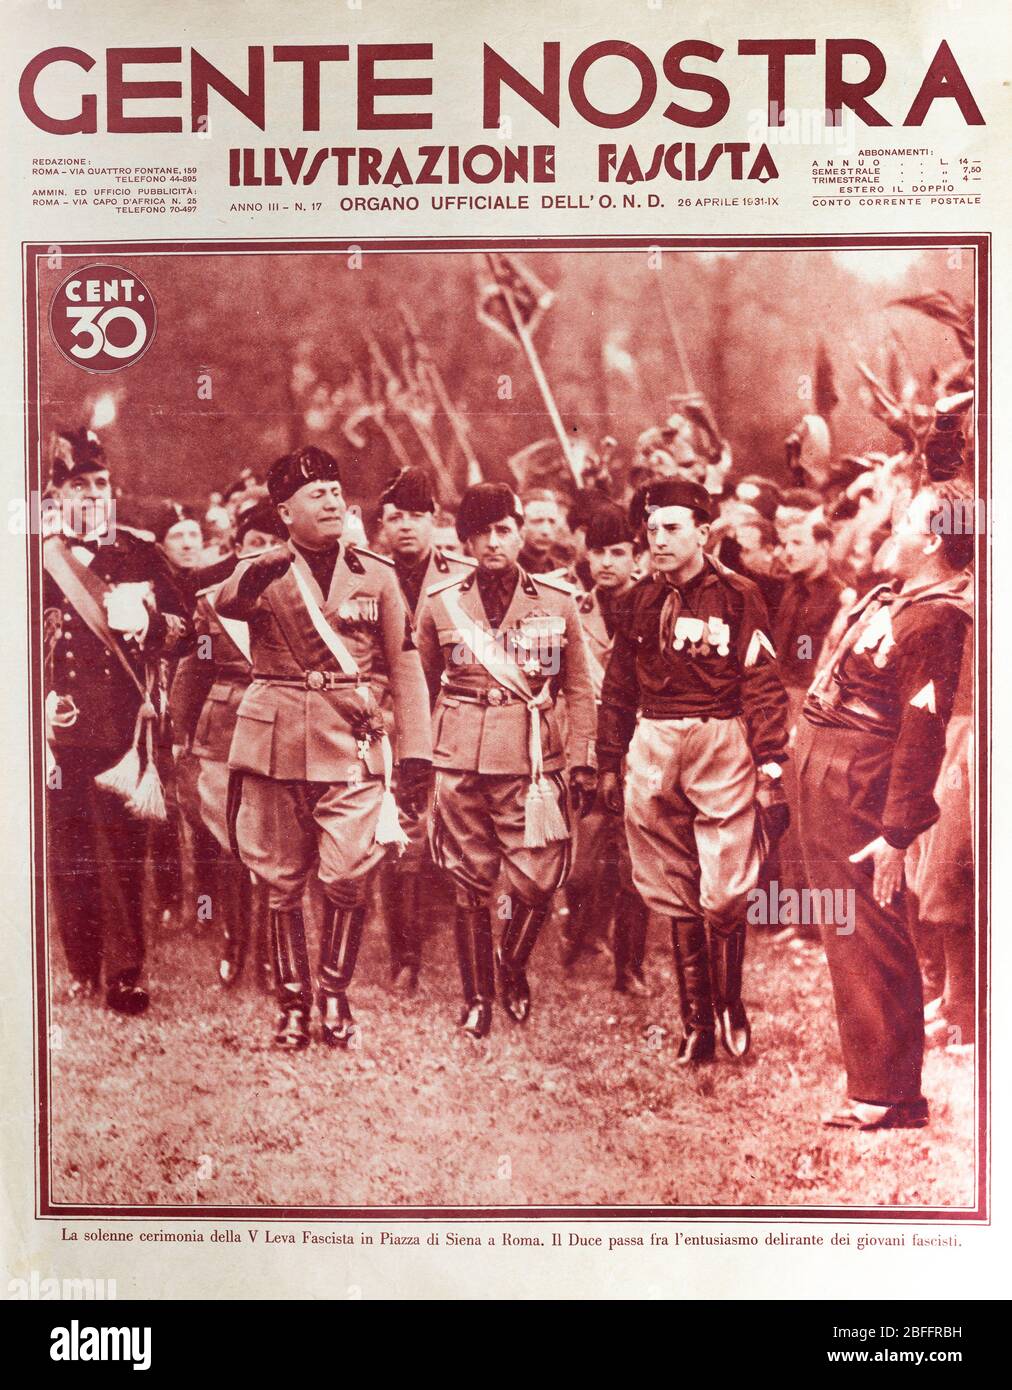 Benito Mussolini, illustration from Italian Fascist newspaper Gente Nostra, Illustrazione fascista, Italy, 1931 Stock Photo